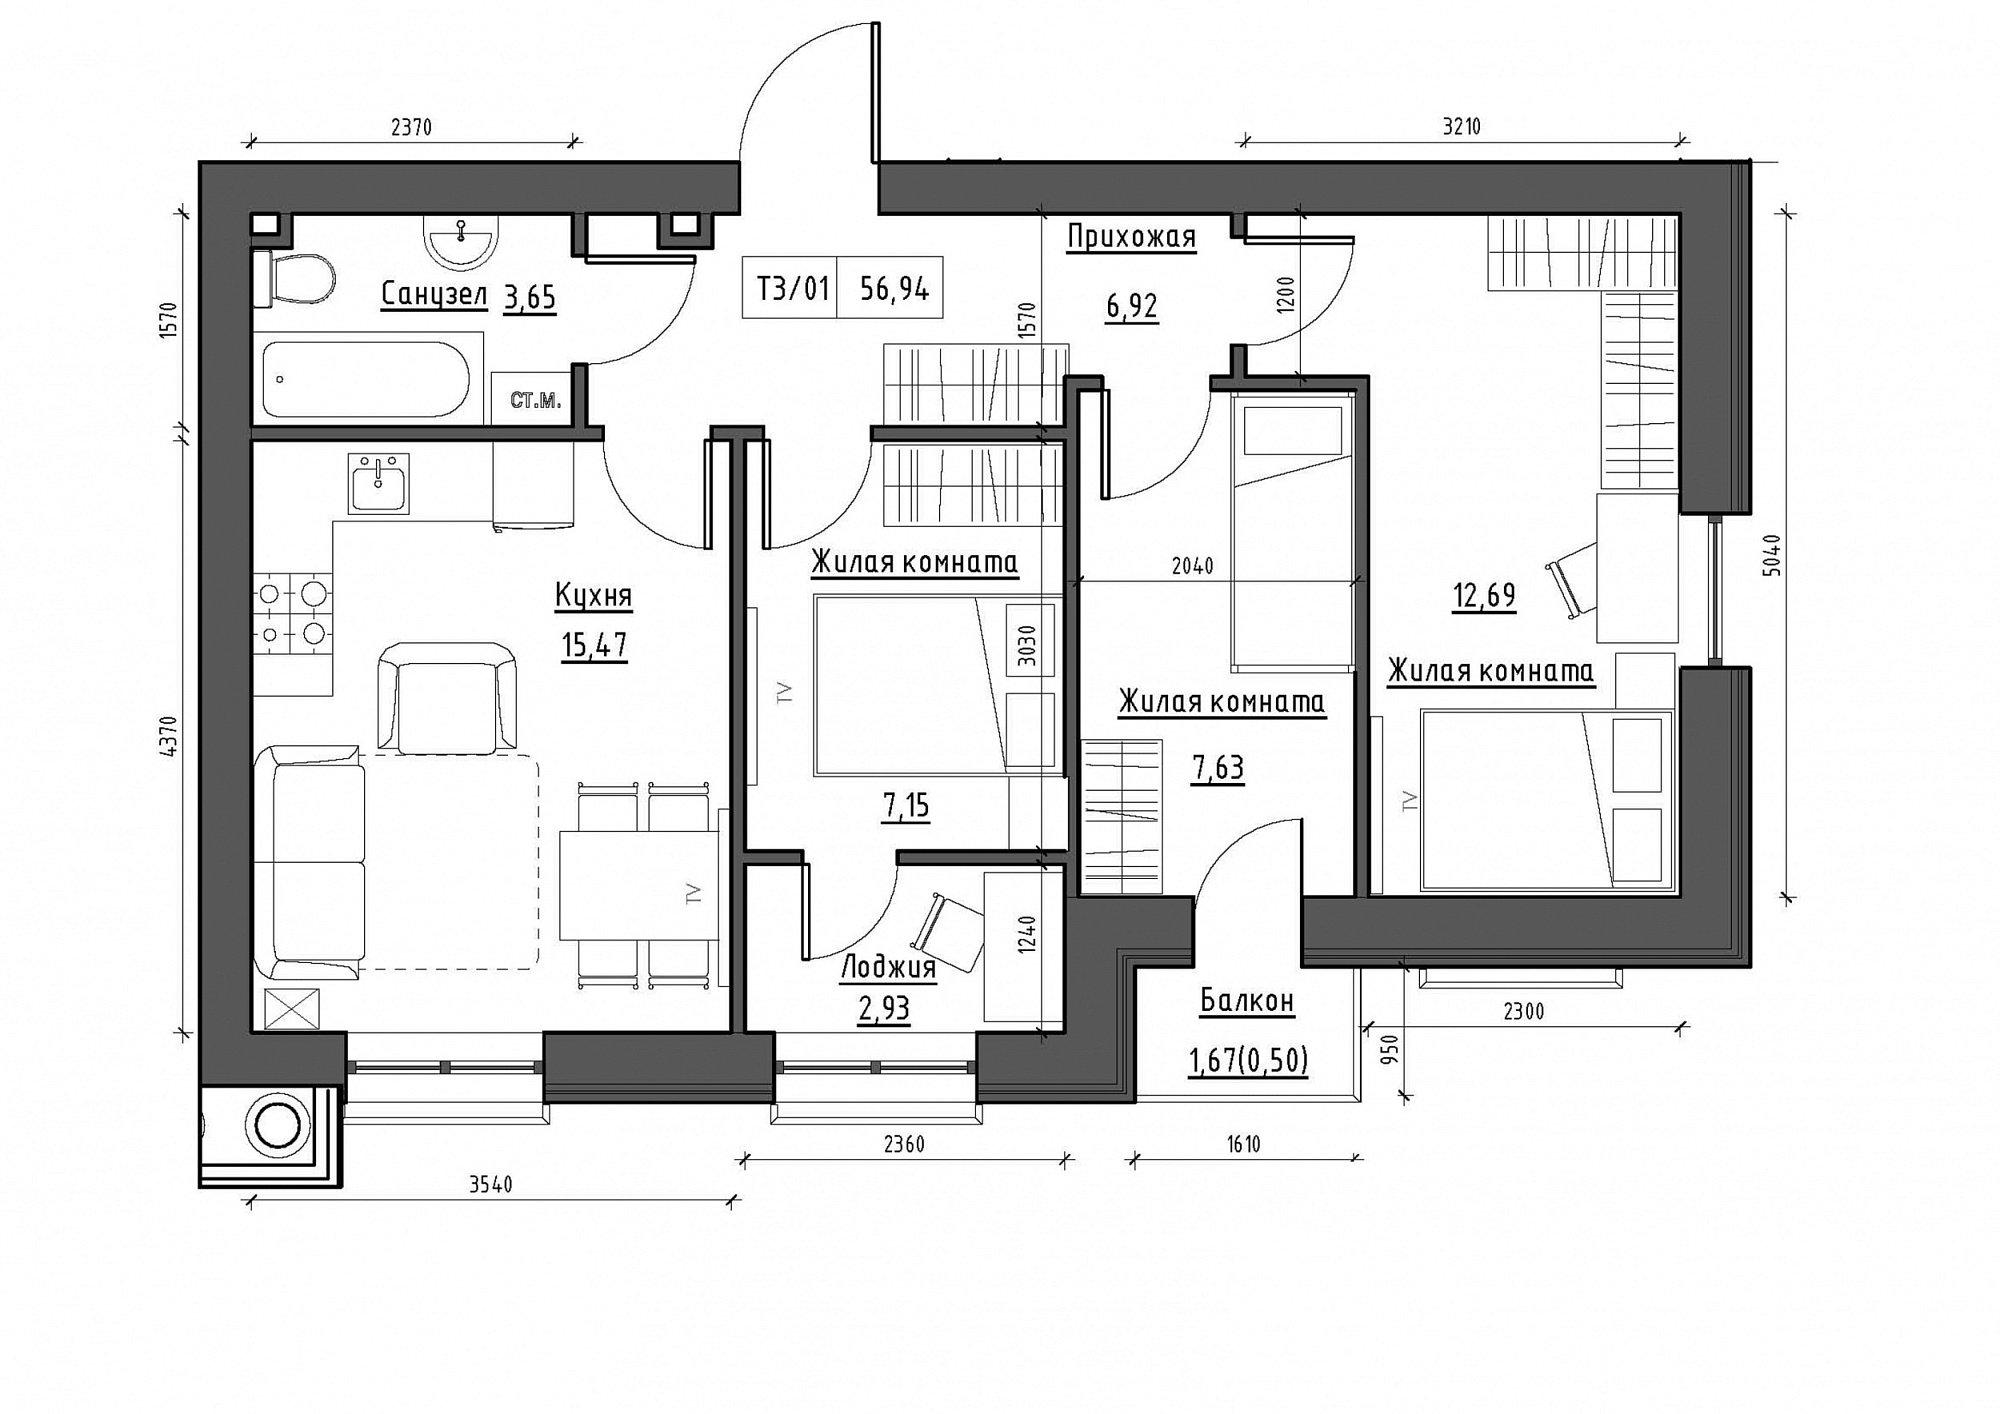 Планування 3-к квартира площею 56.94м2, KS-011-03/0008.